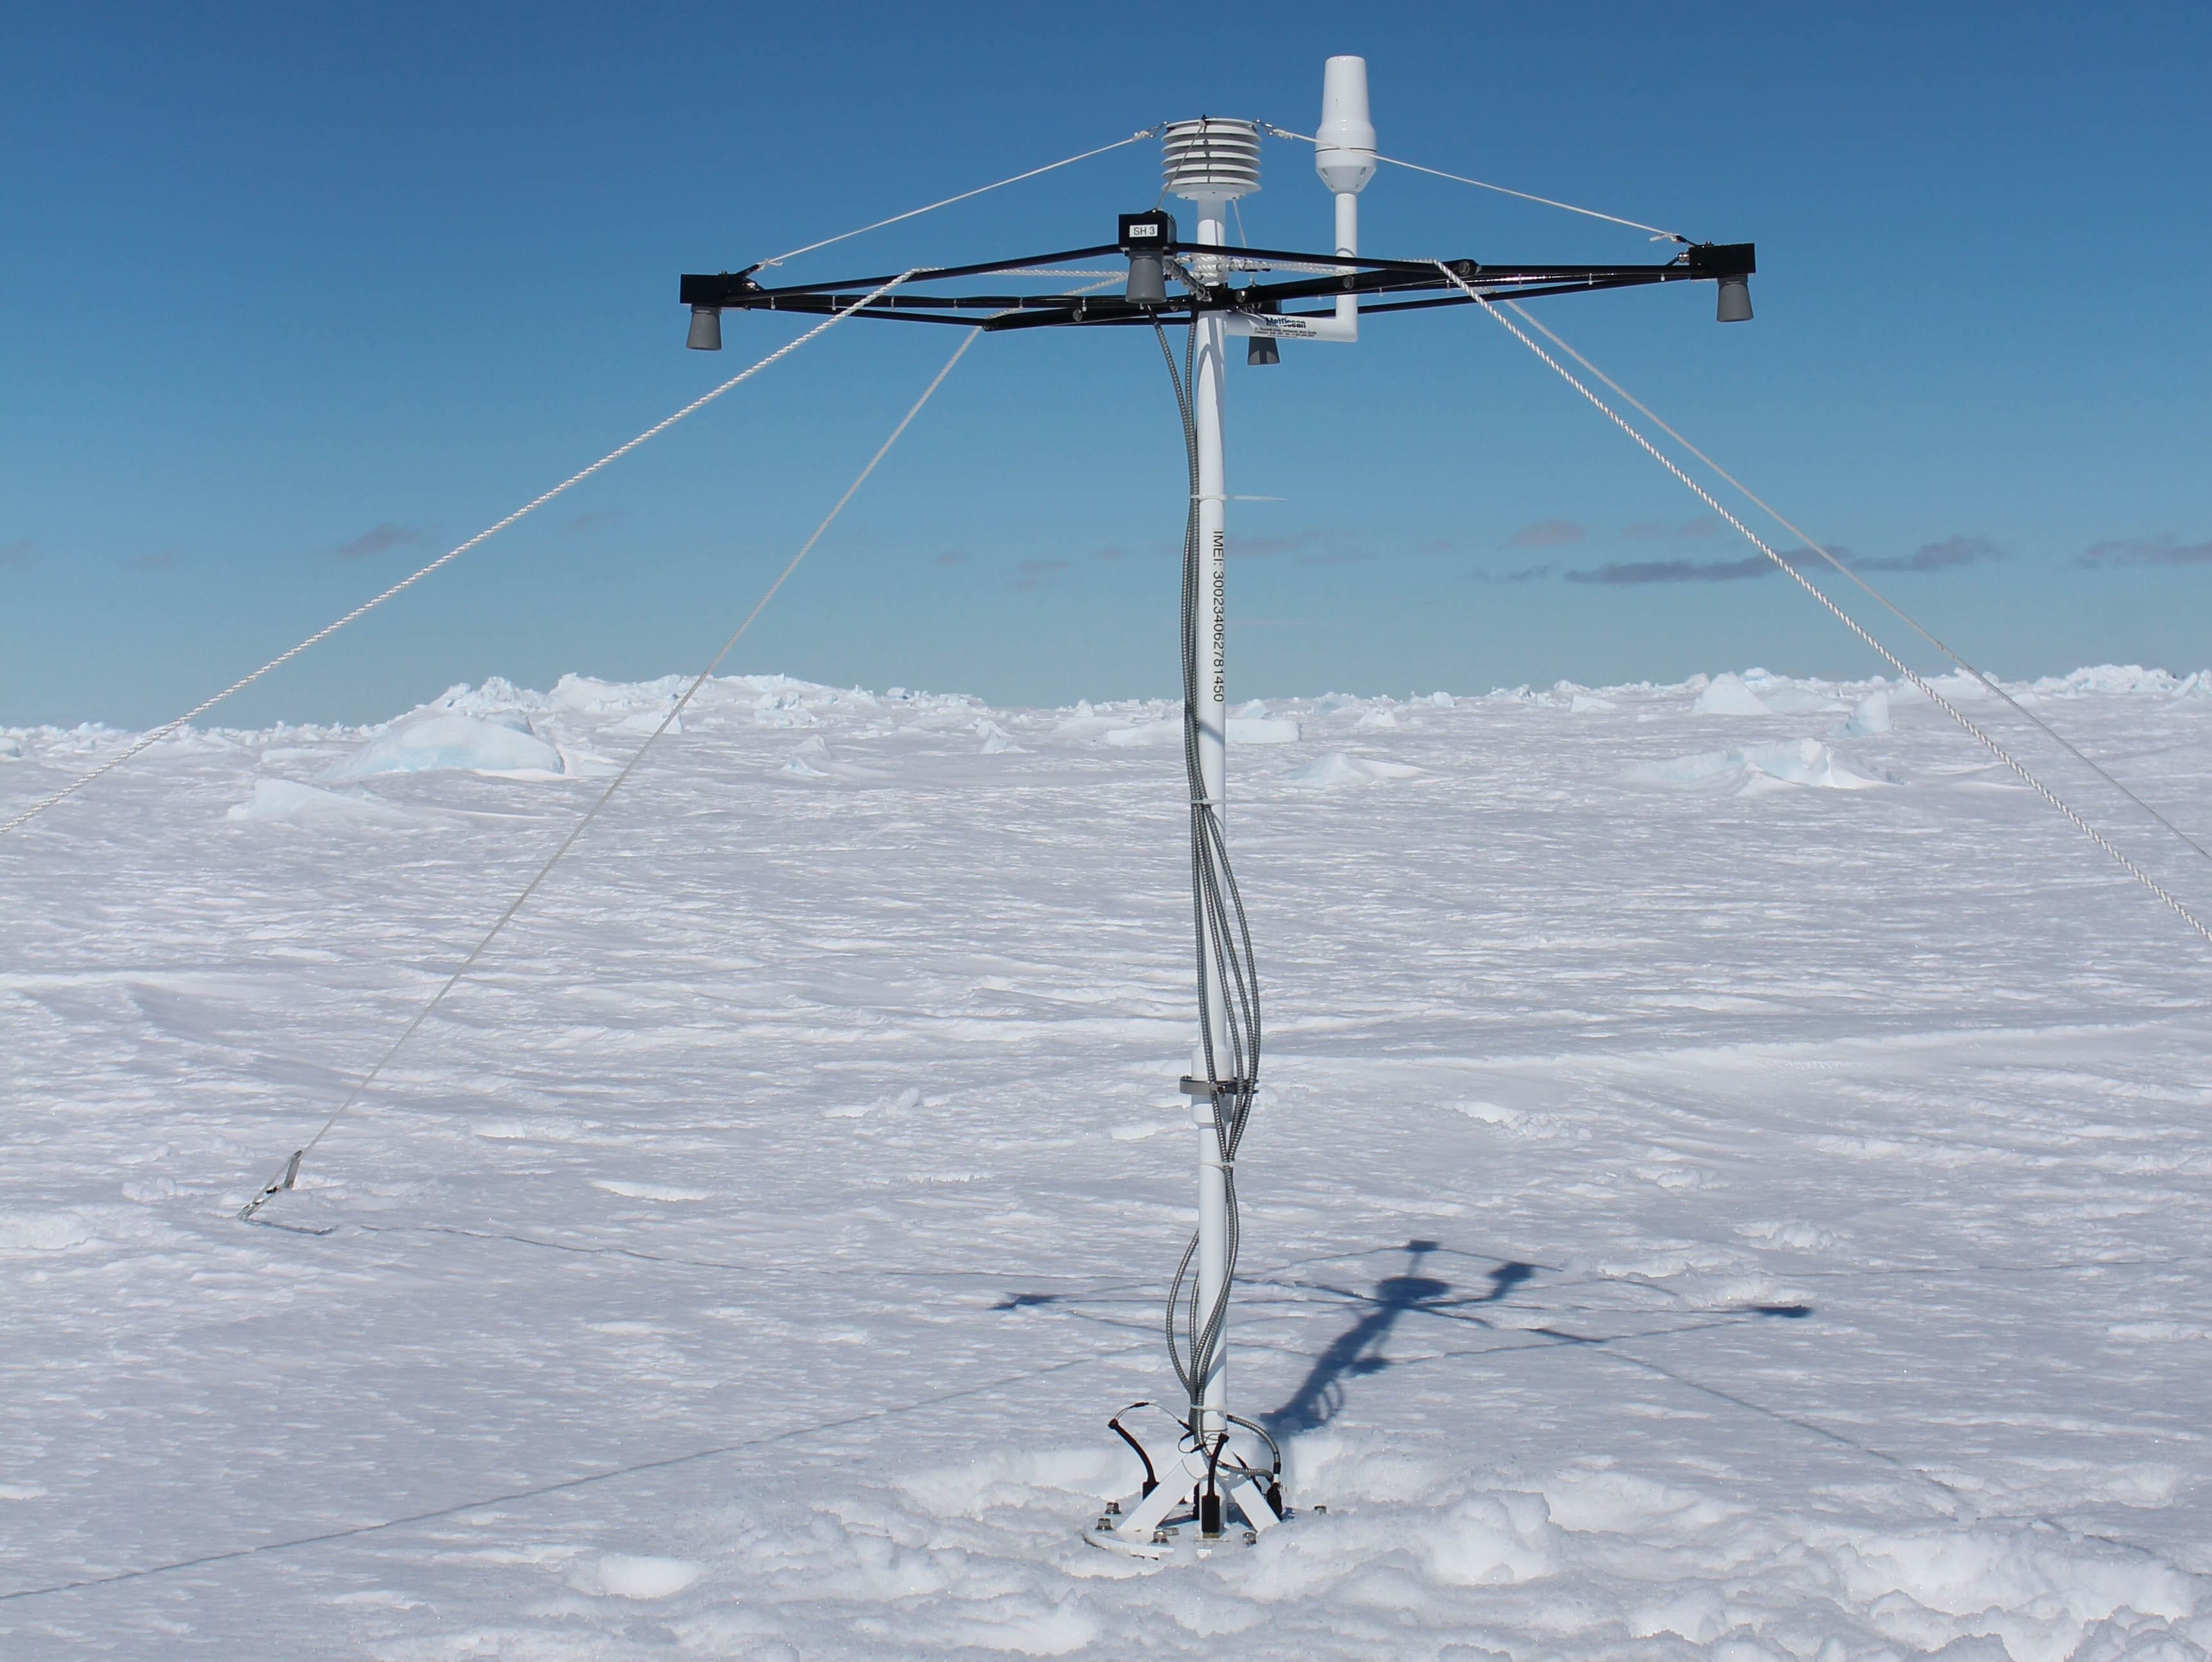 Schneeboje 2015S39 ausgebracht auf Meereis in der Antarktis.